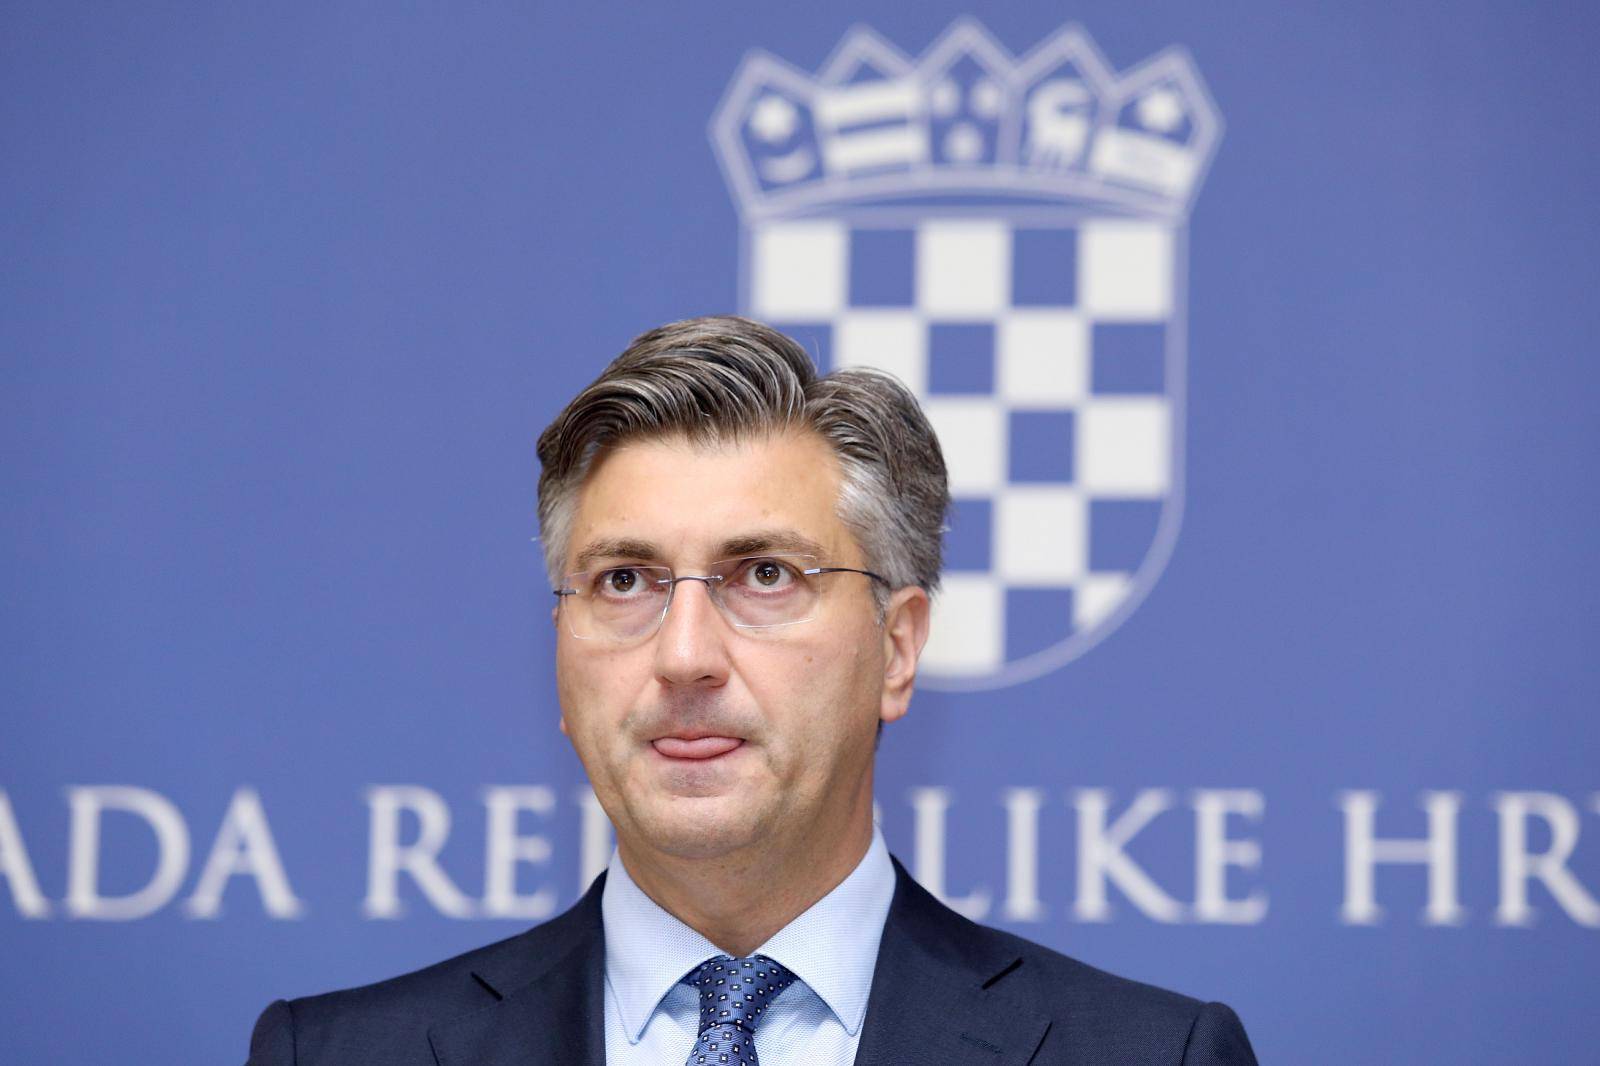 Plenković: Govor predsjednice nije bio kritičan prema Vladi